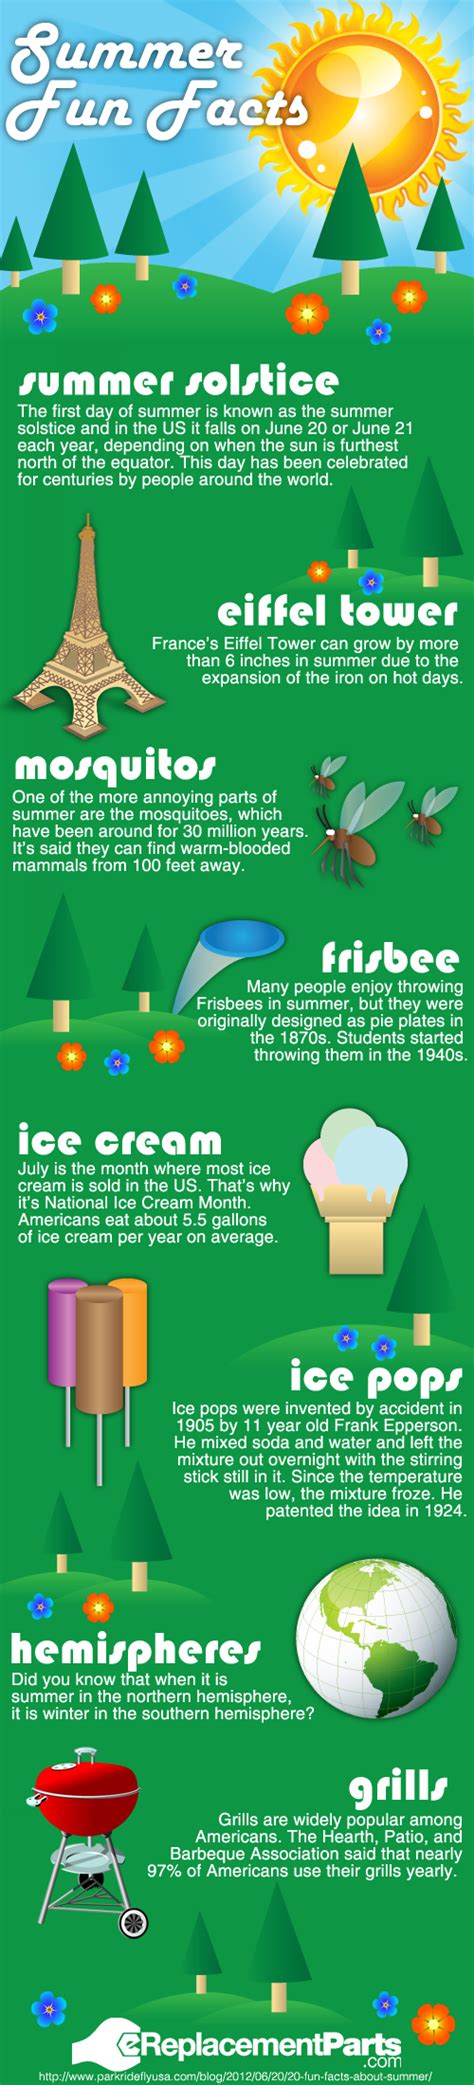 summer-fun-facts-visual-ly